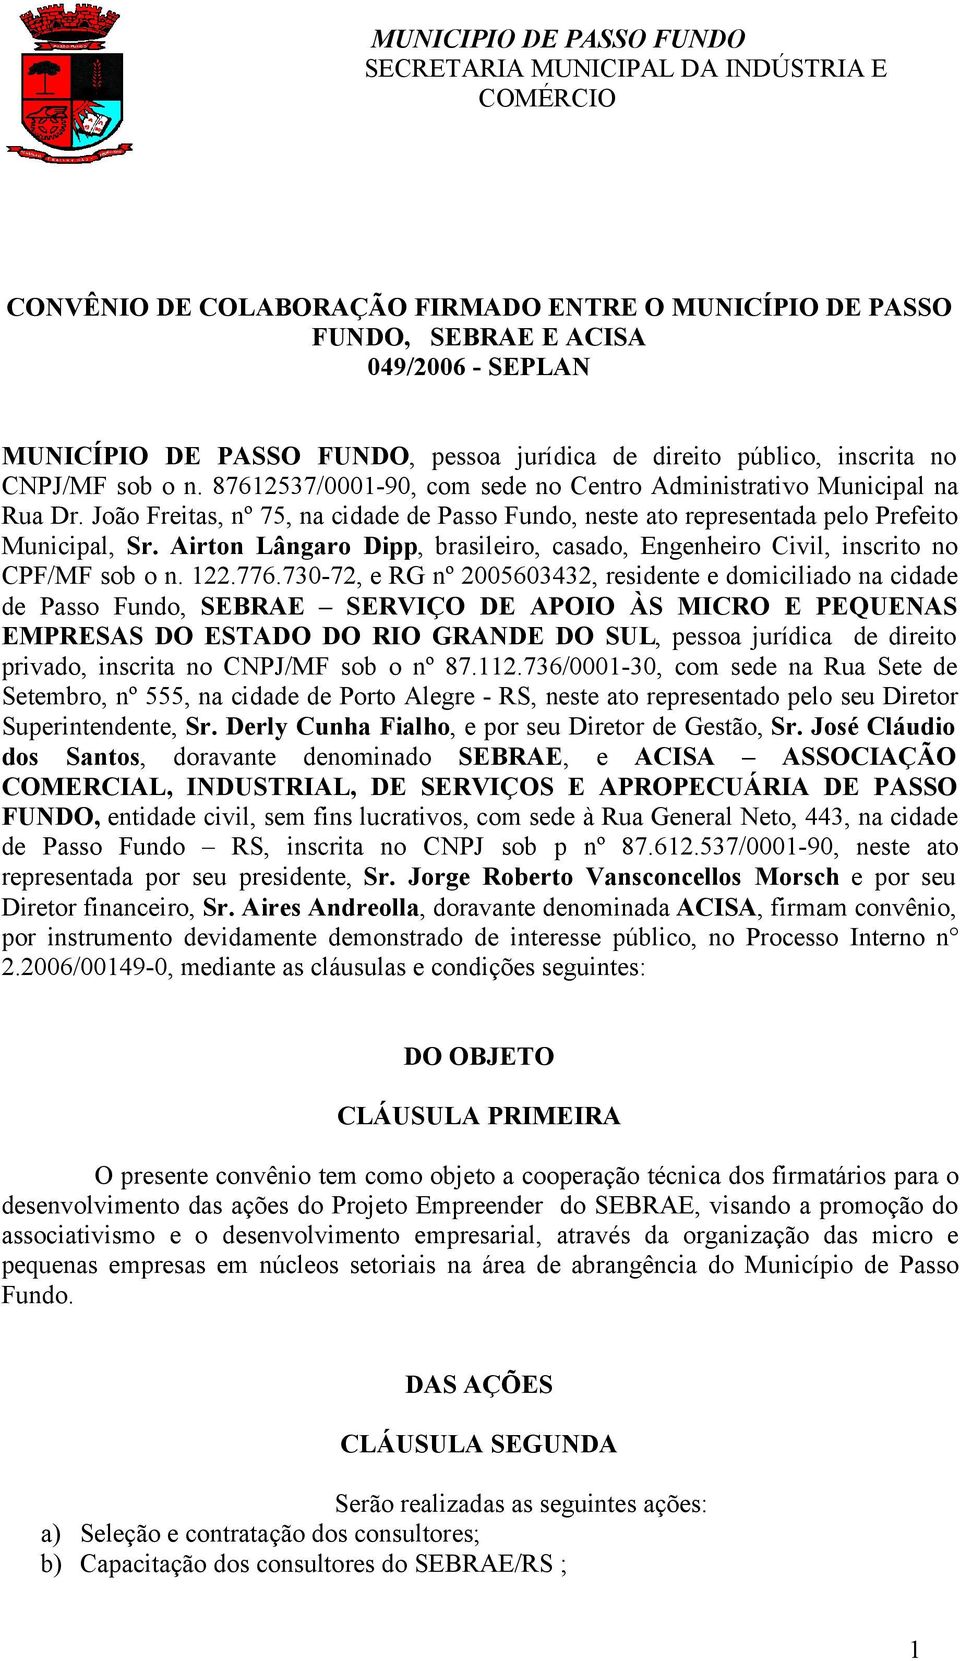 Airton Lângaro Dipp, brasileiro, casado, Engenheiro Civil, inscrito no CPF/MF sob o n. 122.776.